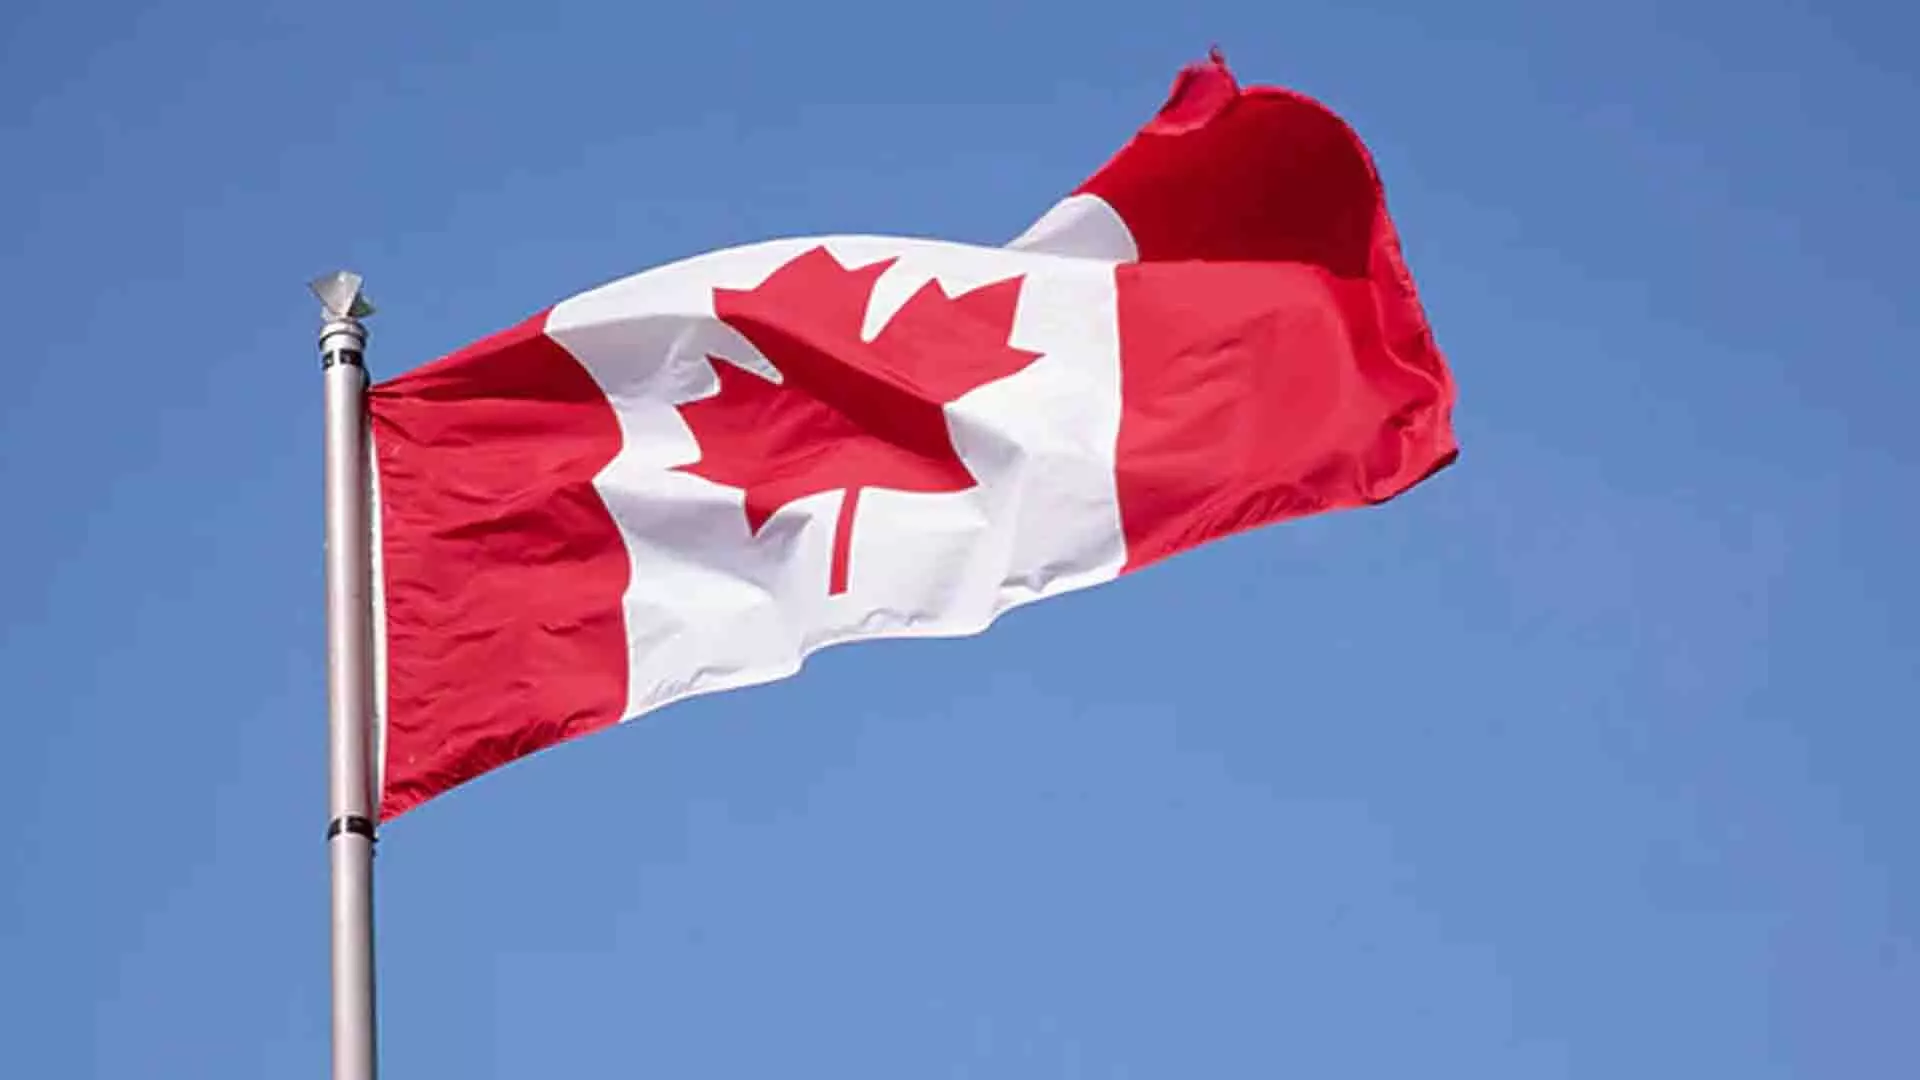 कनाडा ने स्थायी निवास शुल्क में 12% की बढ़ोतरी की। नई दरें जांचें